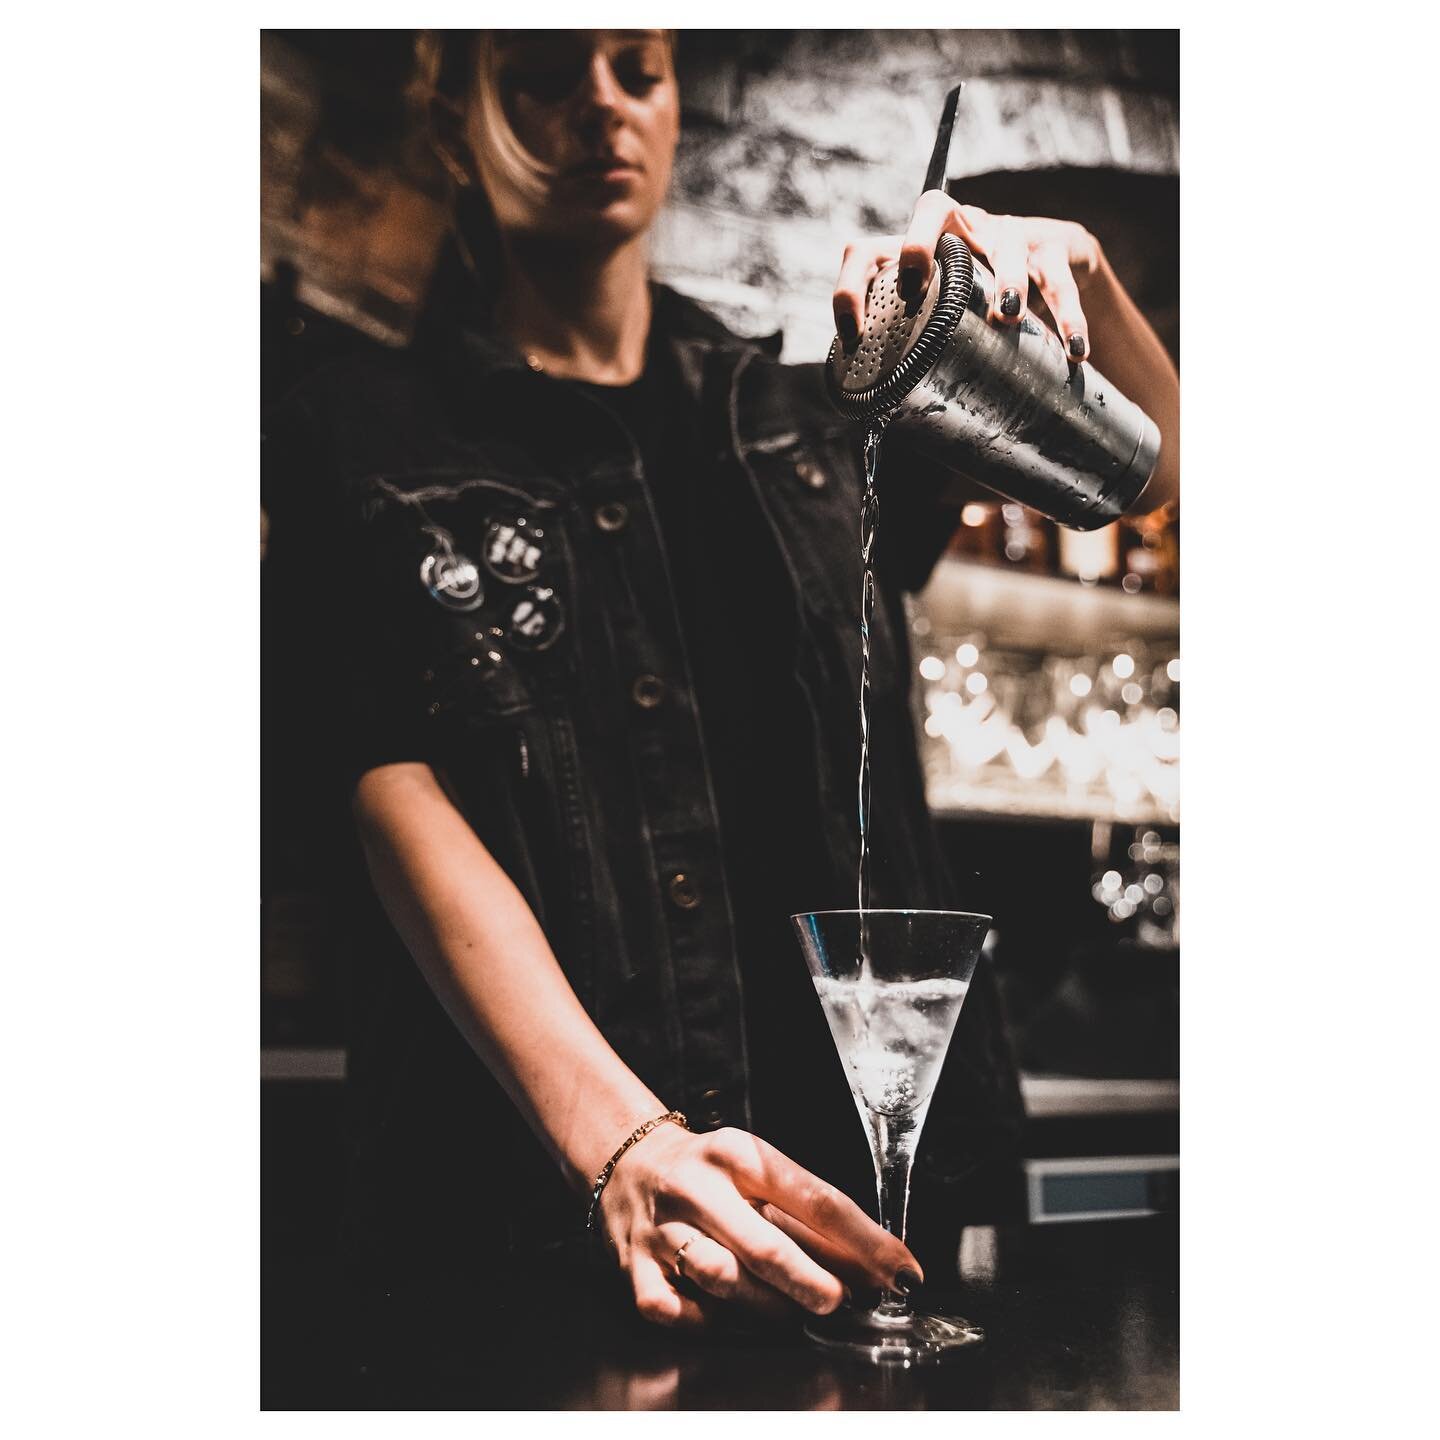 Still Punk
.
.
.
#cocktailporn #cocktailphotography #cocktailphotographer #birmingham #birminghamphotographer #birminghamphotography #punk #thewilderness #jewelleryquarterbirmingham #jewelleryquarter #nikonphotography #onlybirmingham #cocktails @thew